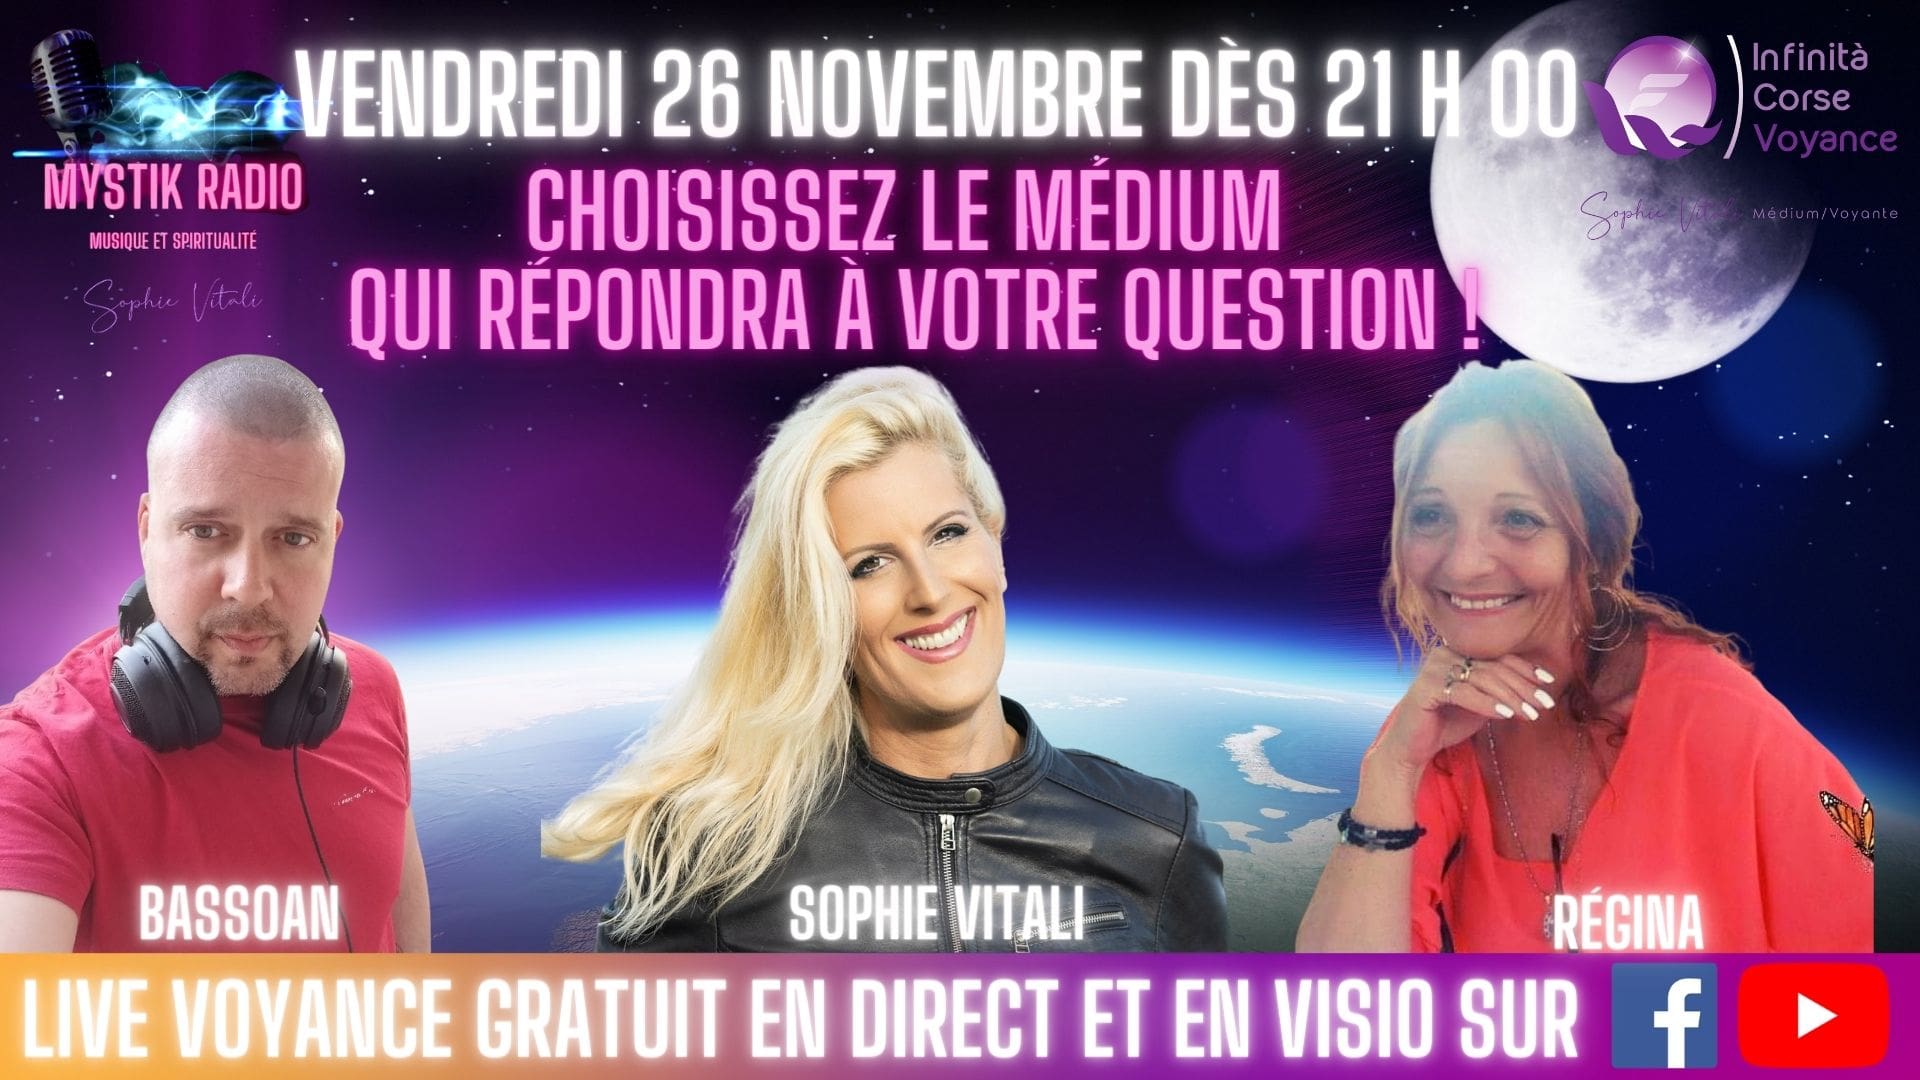 Sophie Vitali, Bassoan et Régina répondent à vos questions pendant le Live voyance gratuite 26.11.2021